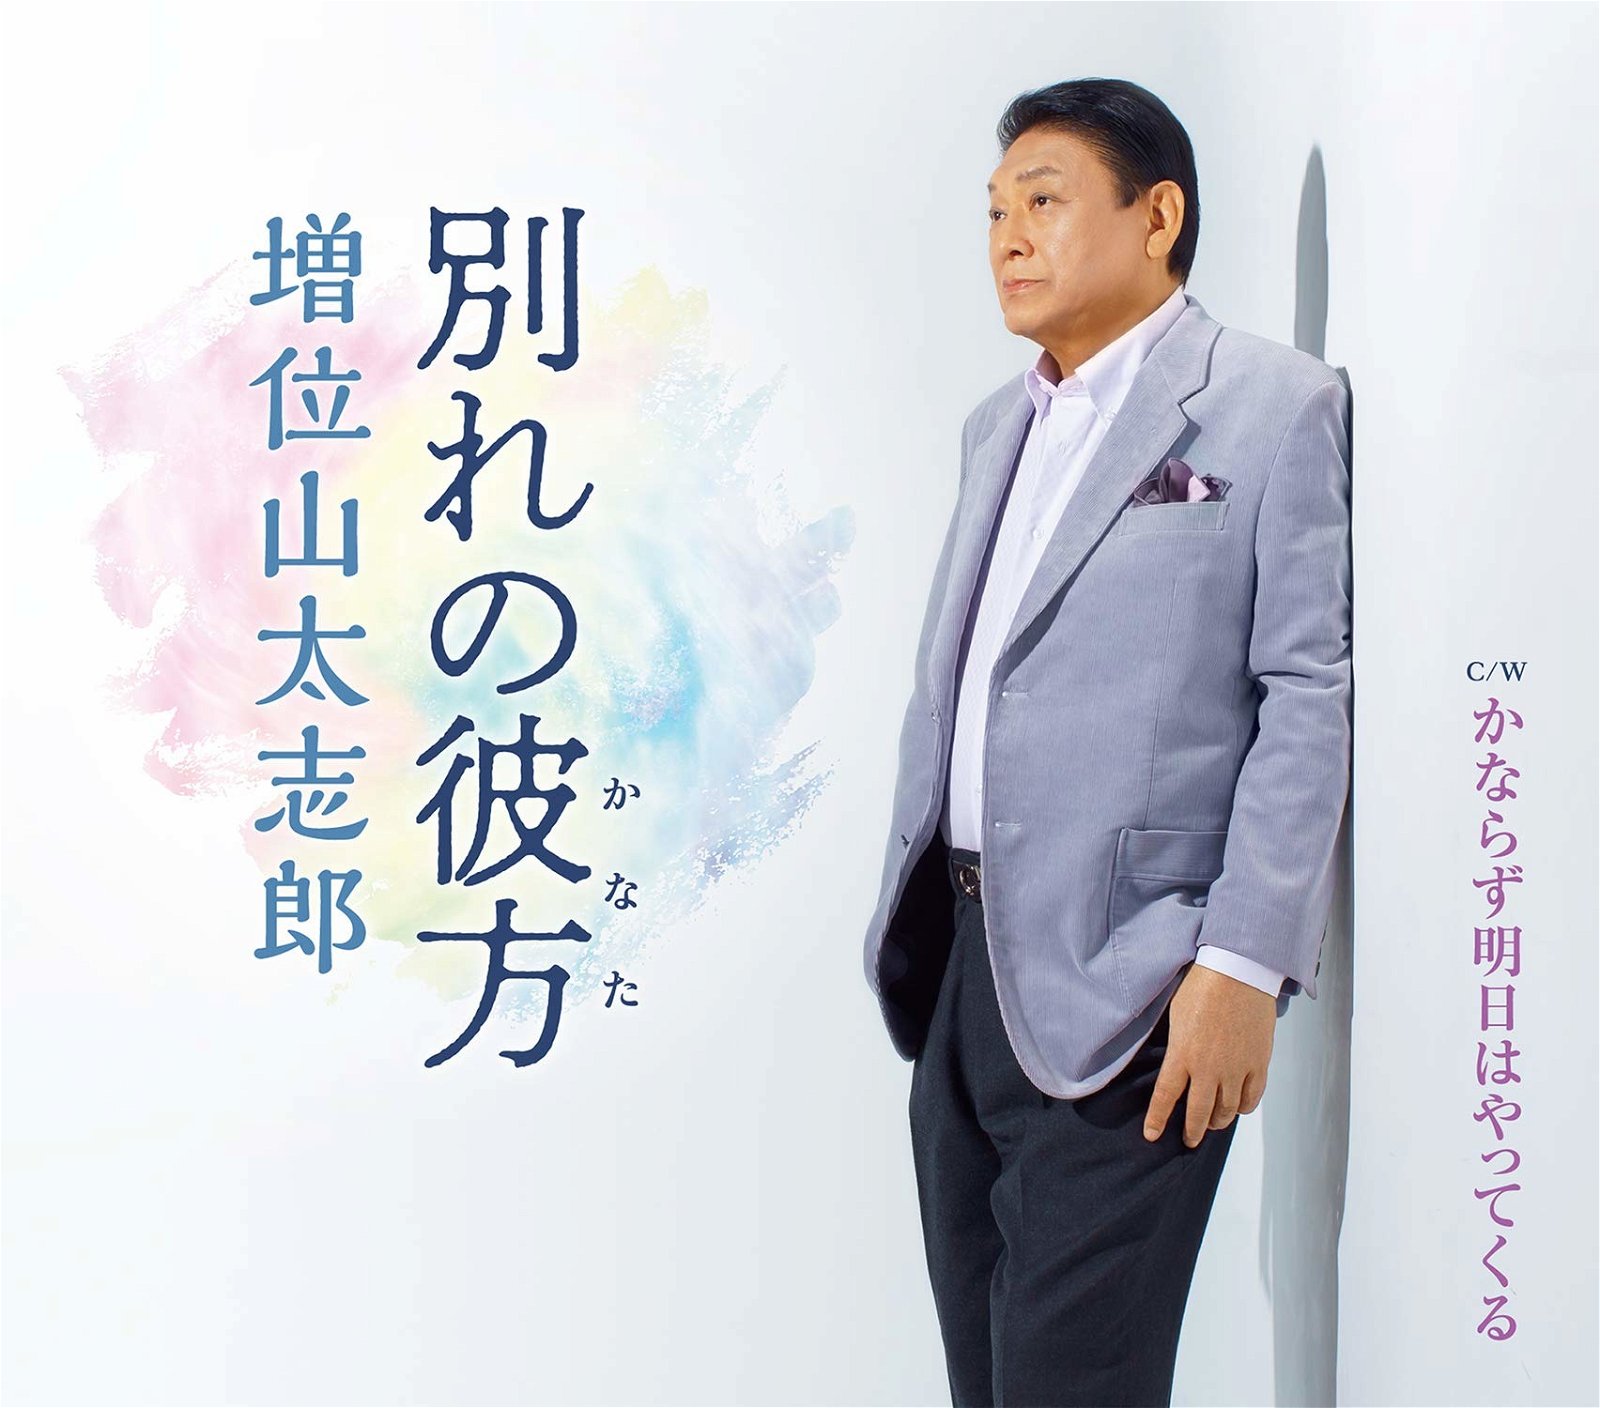 CD Shop - MASUIYAMA, TAISHIRO WAKARE NO KANATA